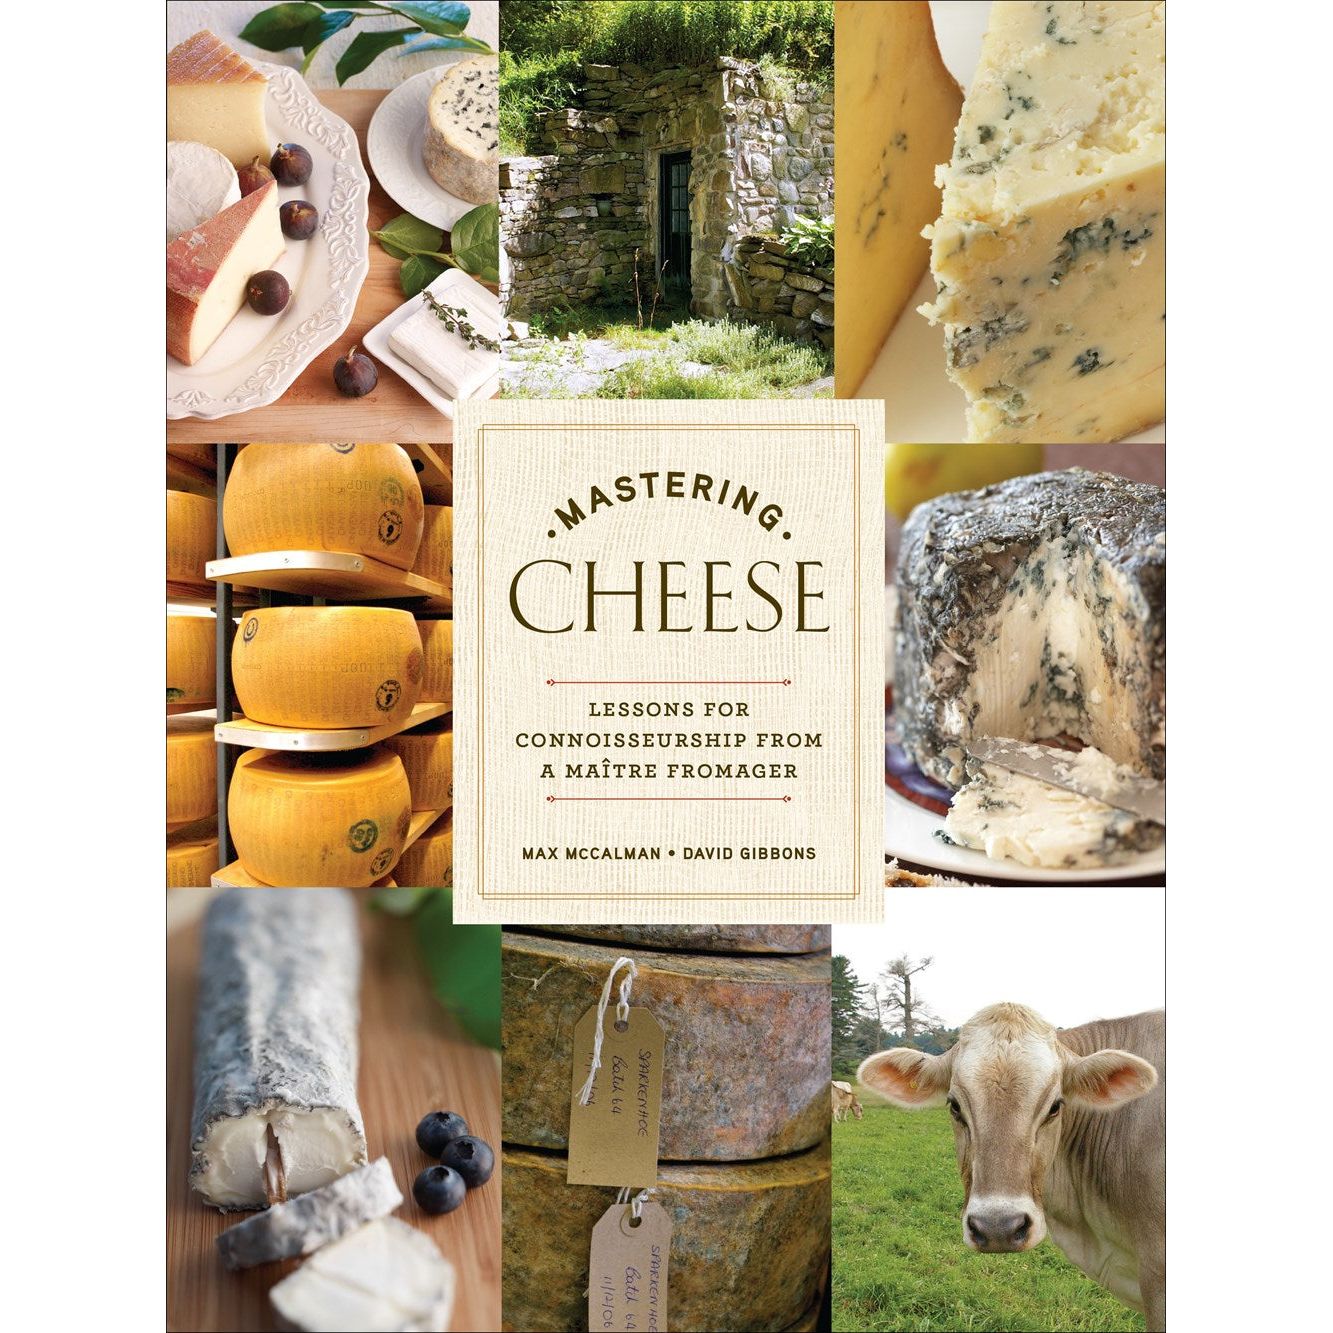 Mastering Cheese (Max McCalman & David Gibbons)